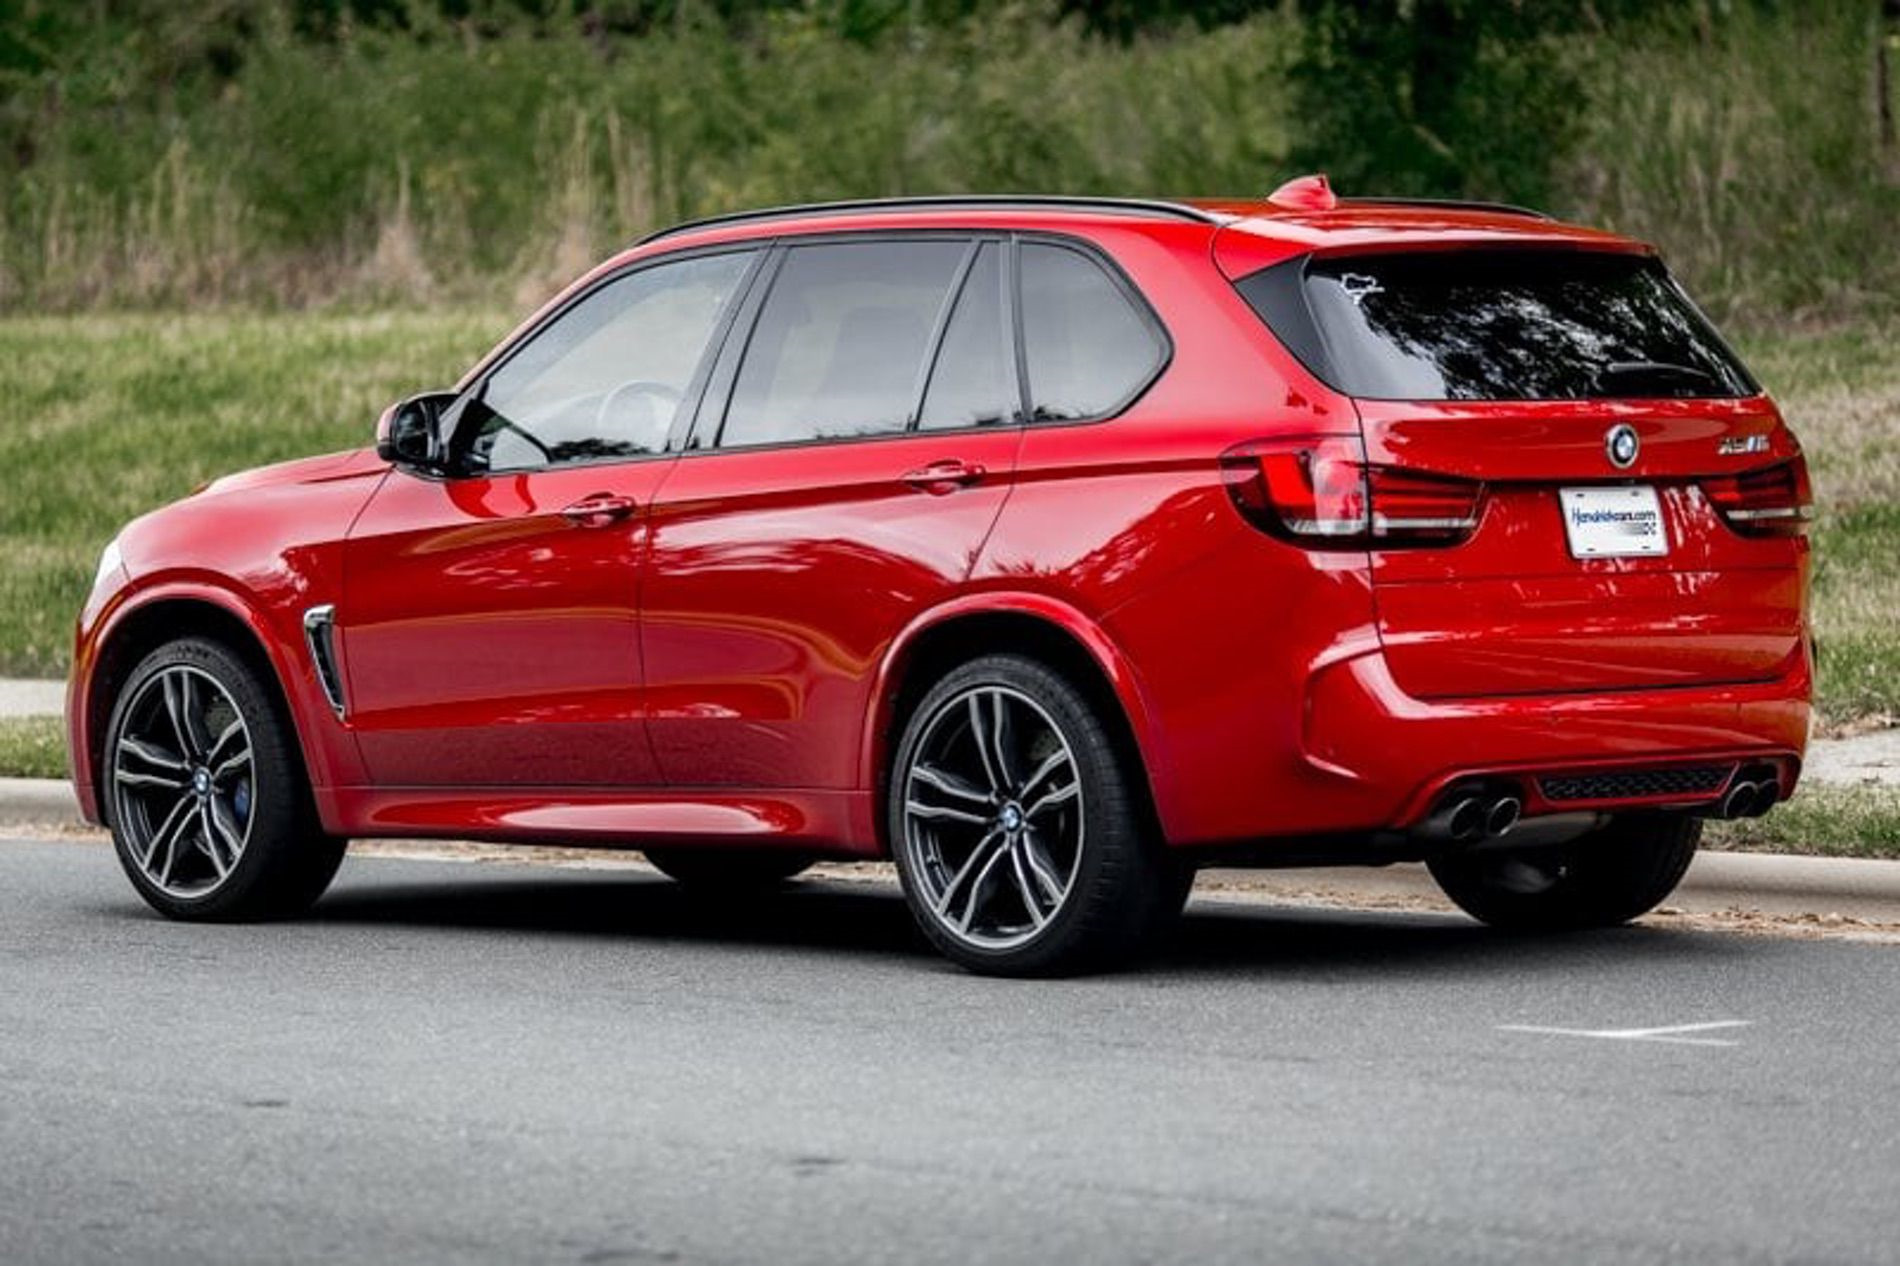 Bmw x5 beamng. BMW x5 f15 красный. BMW x5m 2016. БМВ х5 ф15 красная. BMW x5 g05 красный.